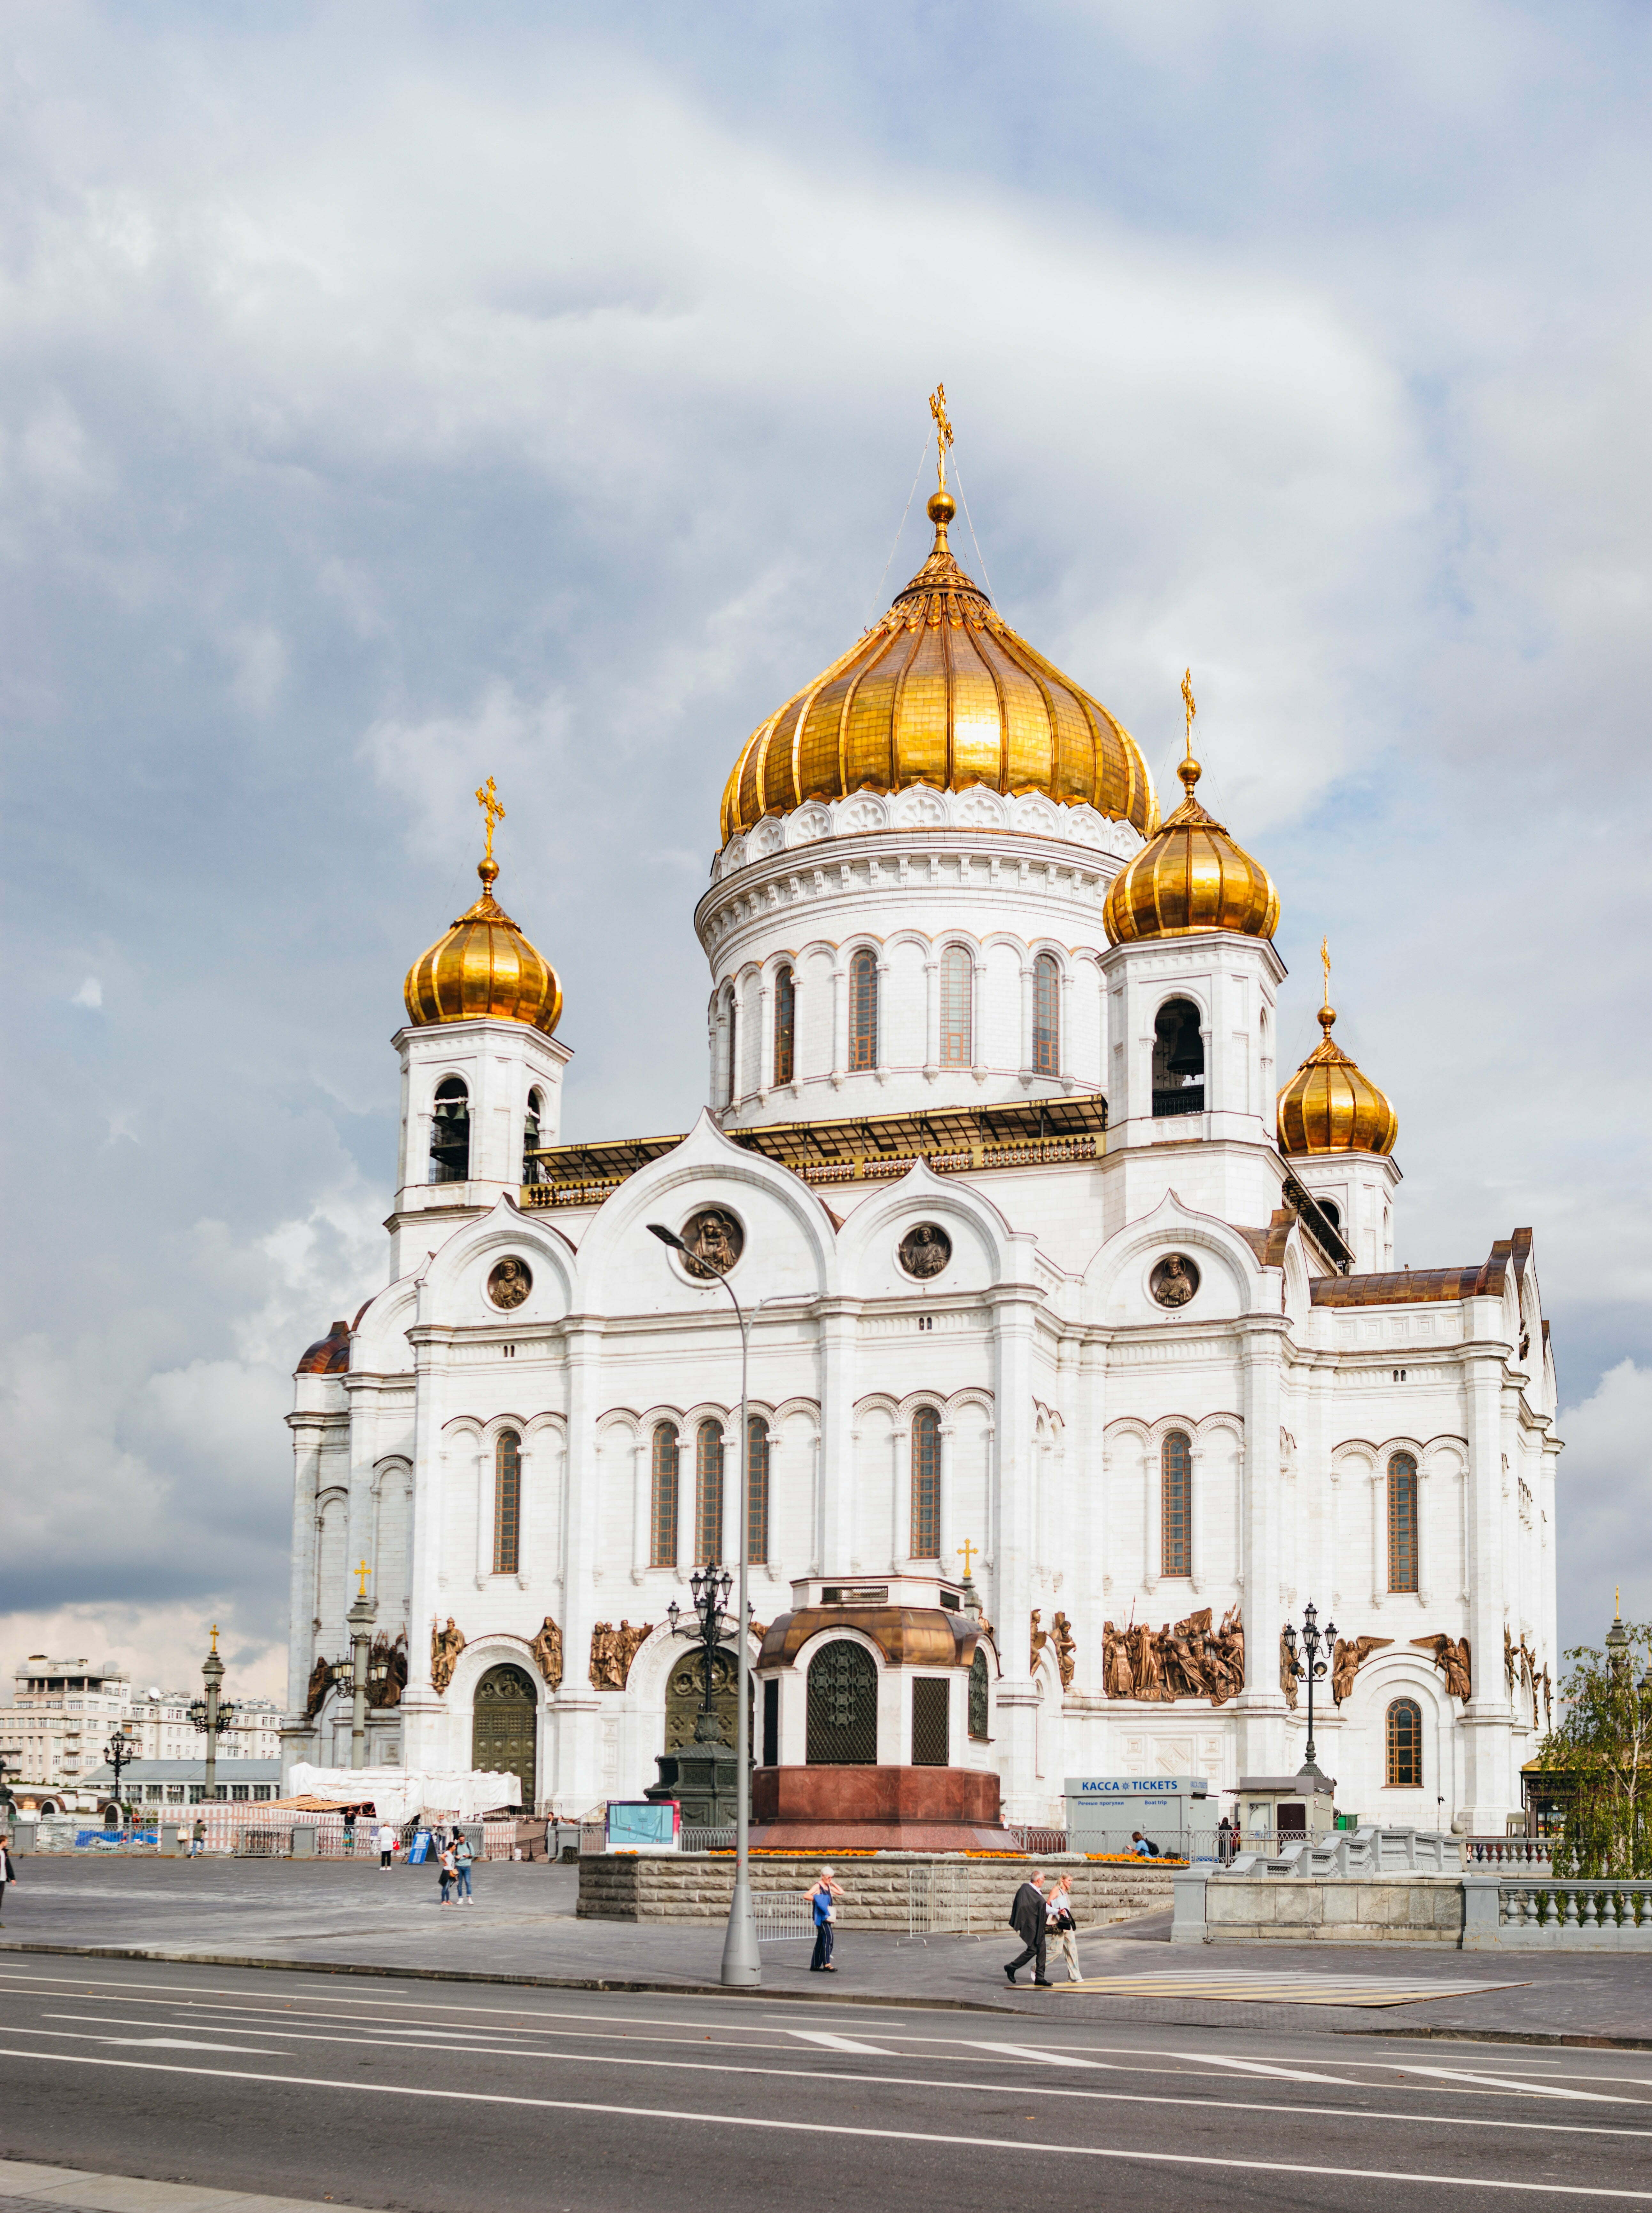 เที่ยวรัสเซีย มอสโคว์ มหาวิหารเซ็นต์ เดอ ซาร์เวีย Cathedral of Christ the Saviour